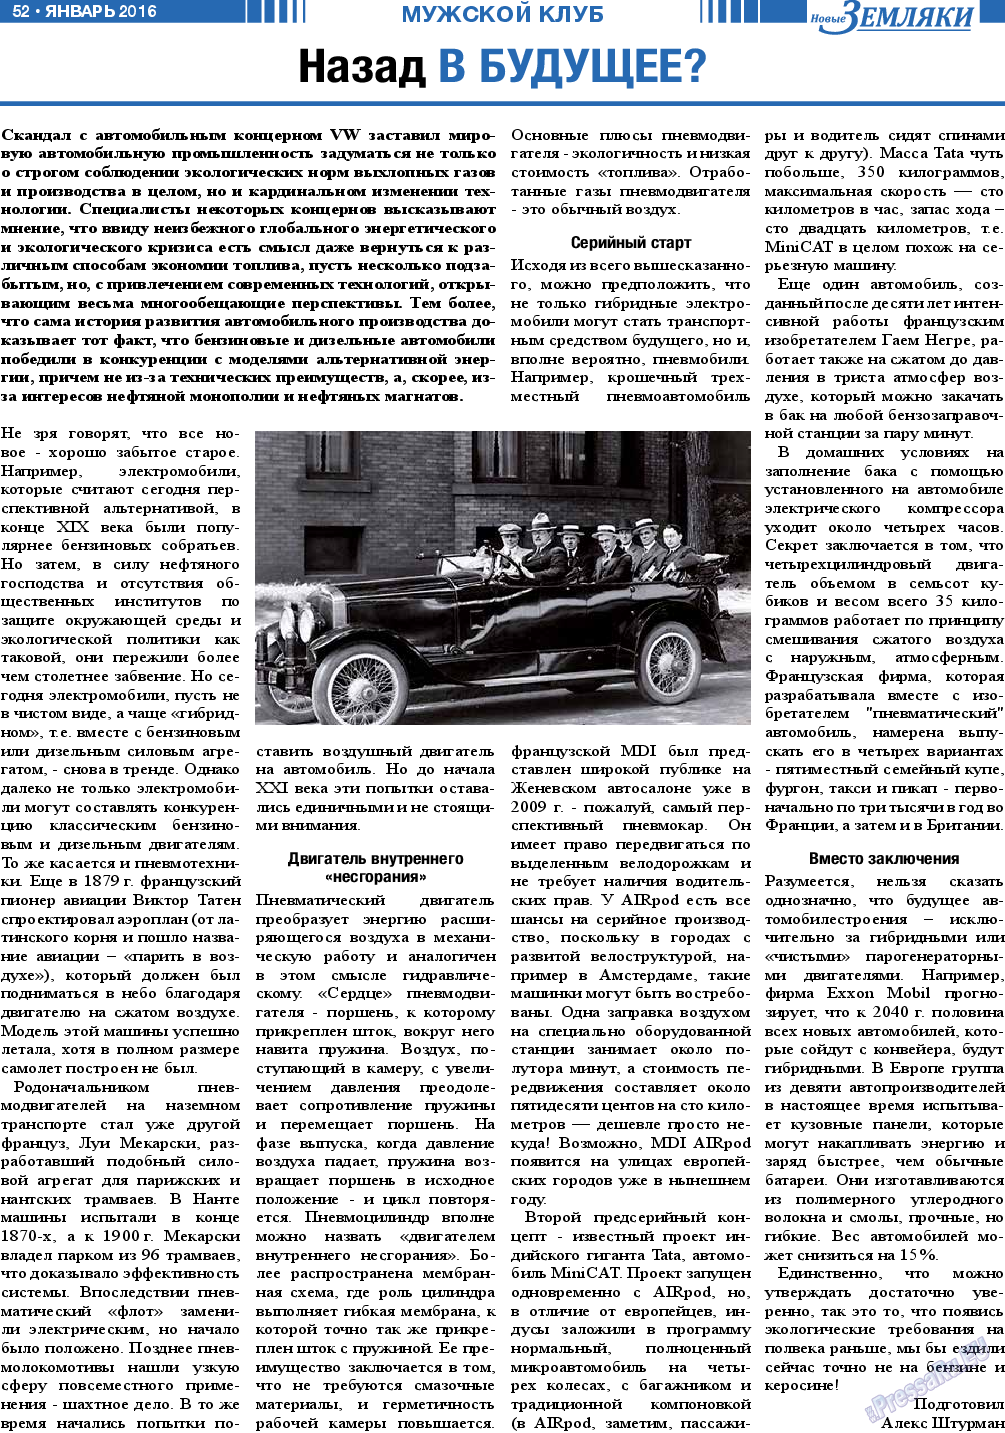 Новые Земляки, газета. 2016 №1 стр.52